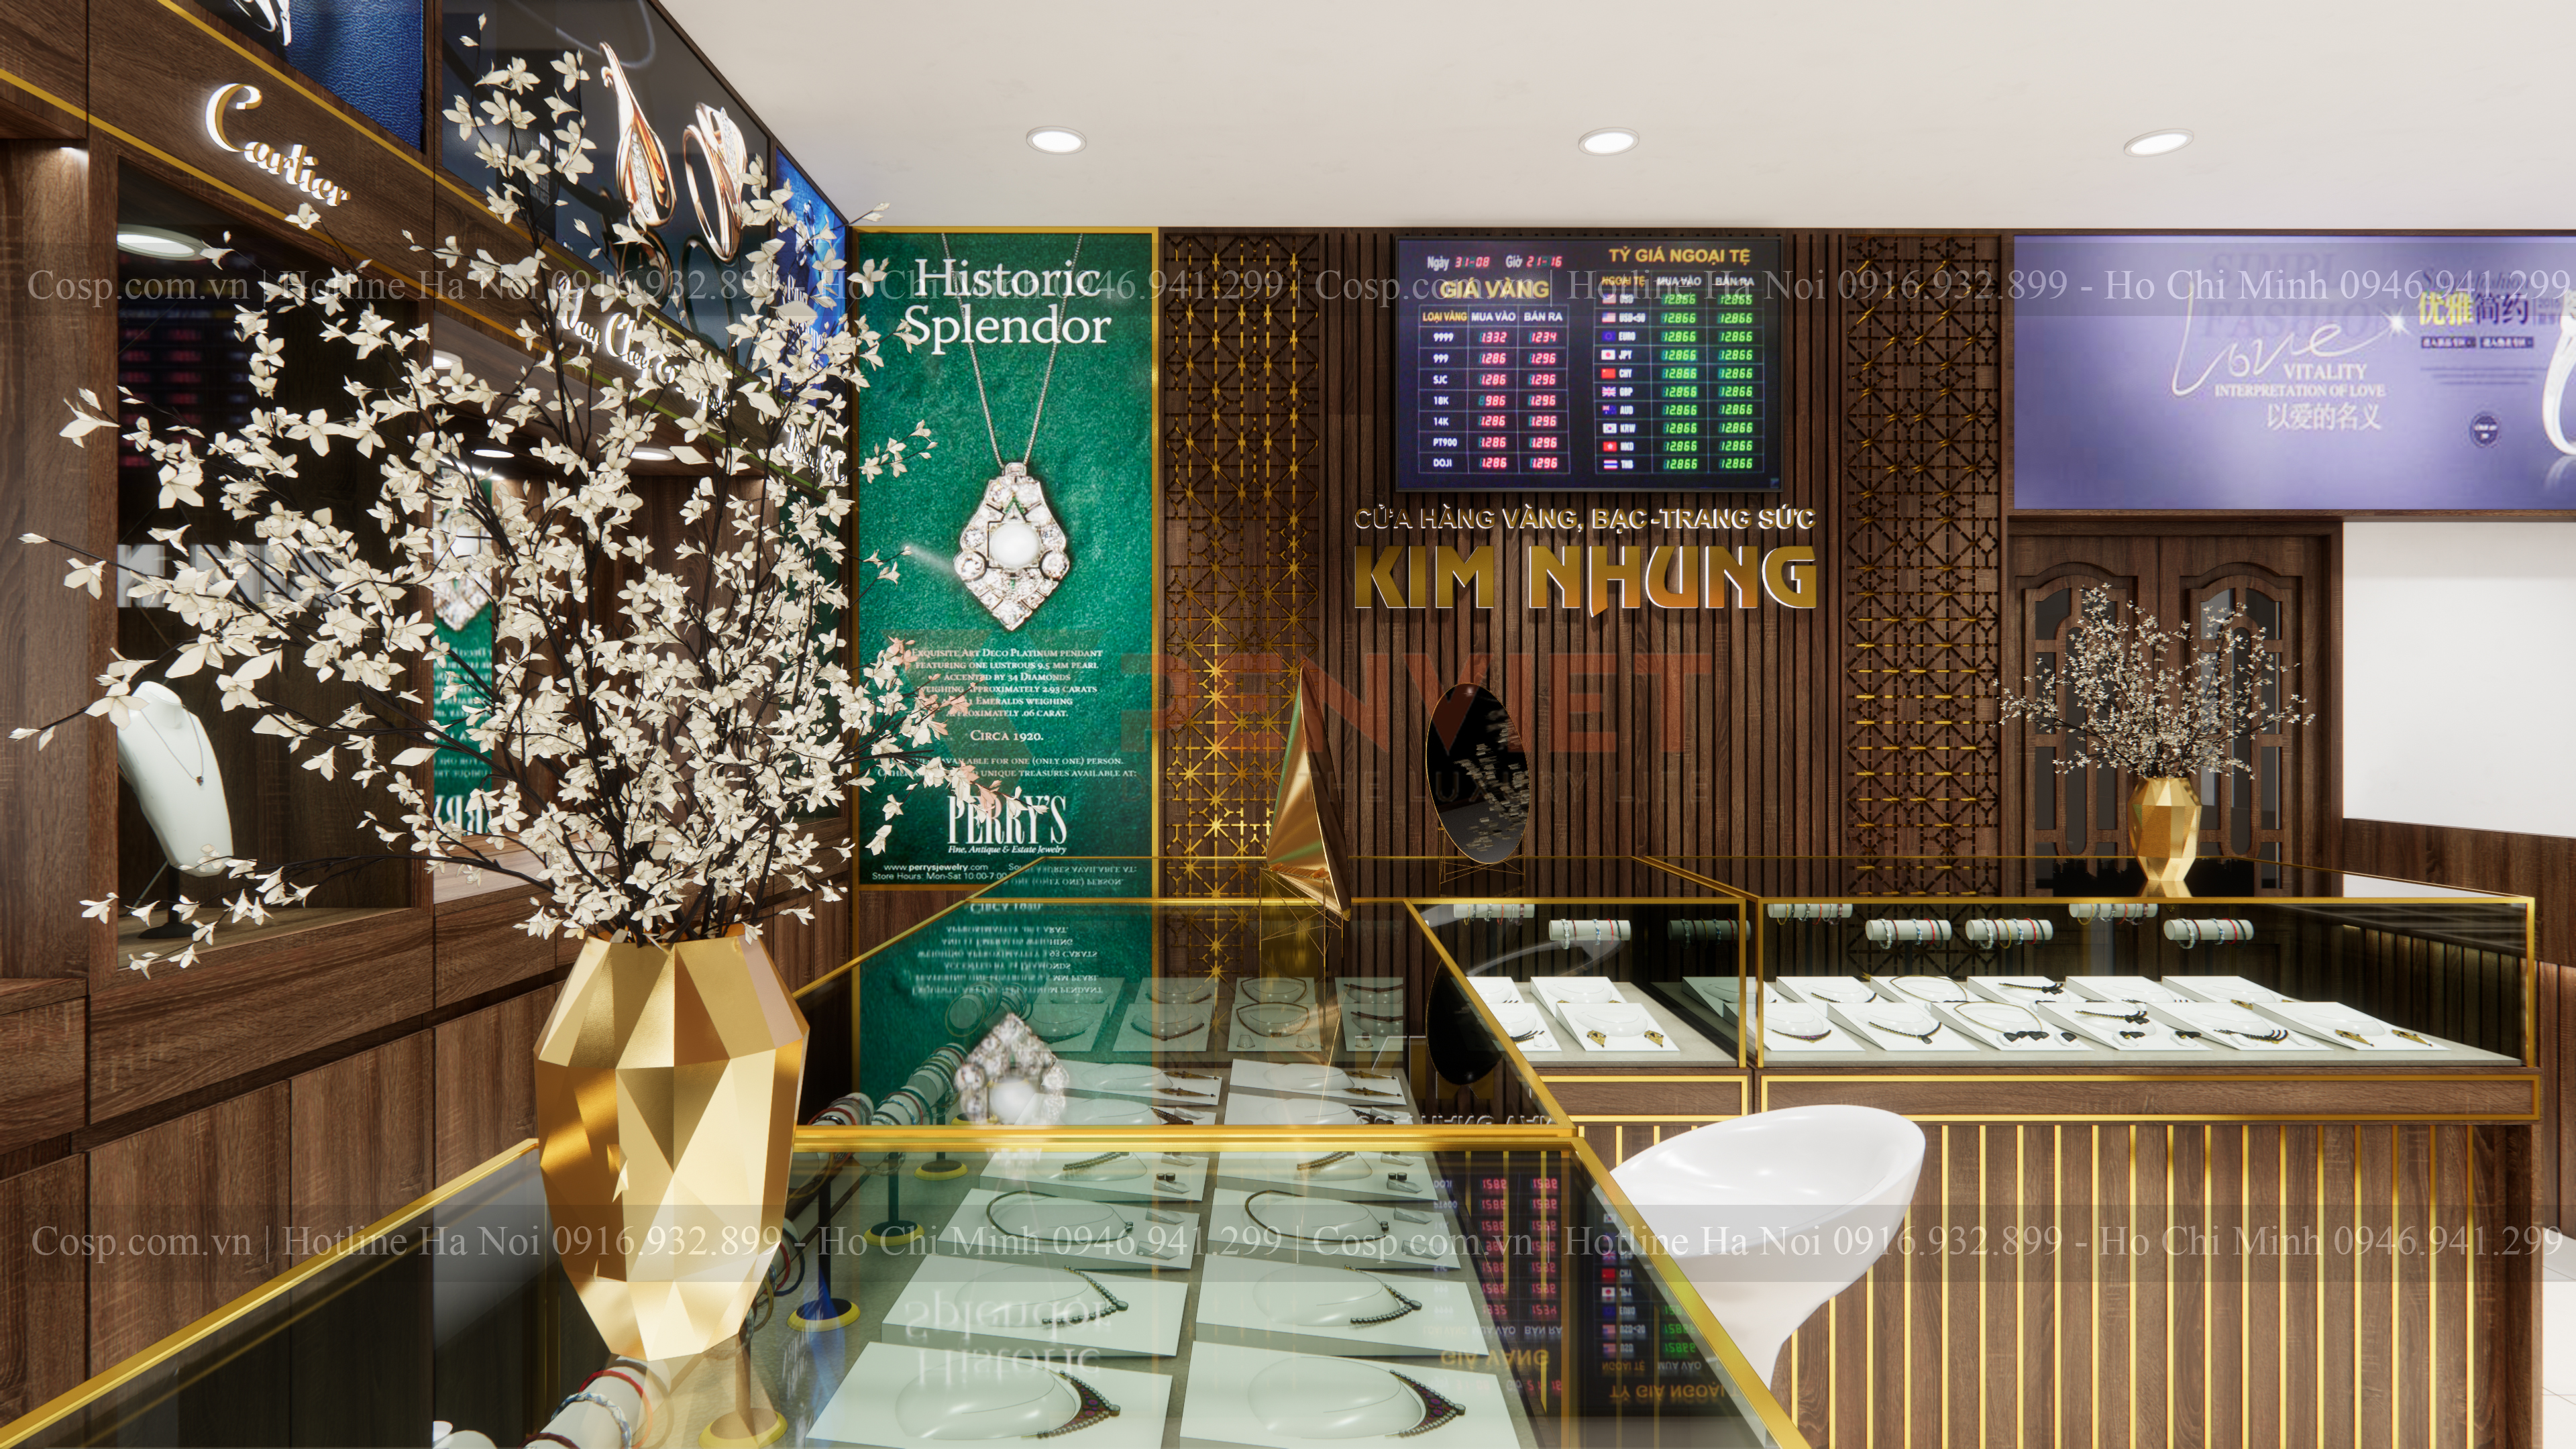 Thiết kế cửa hàng vàng bạc trang sức Kim Nhung